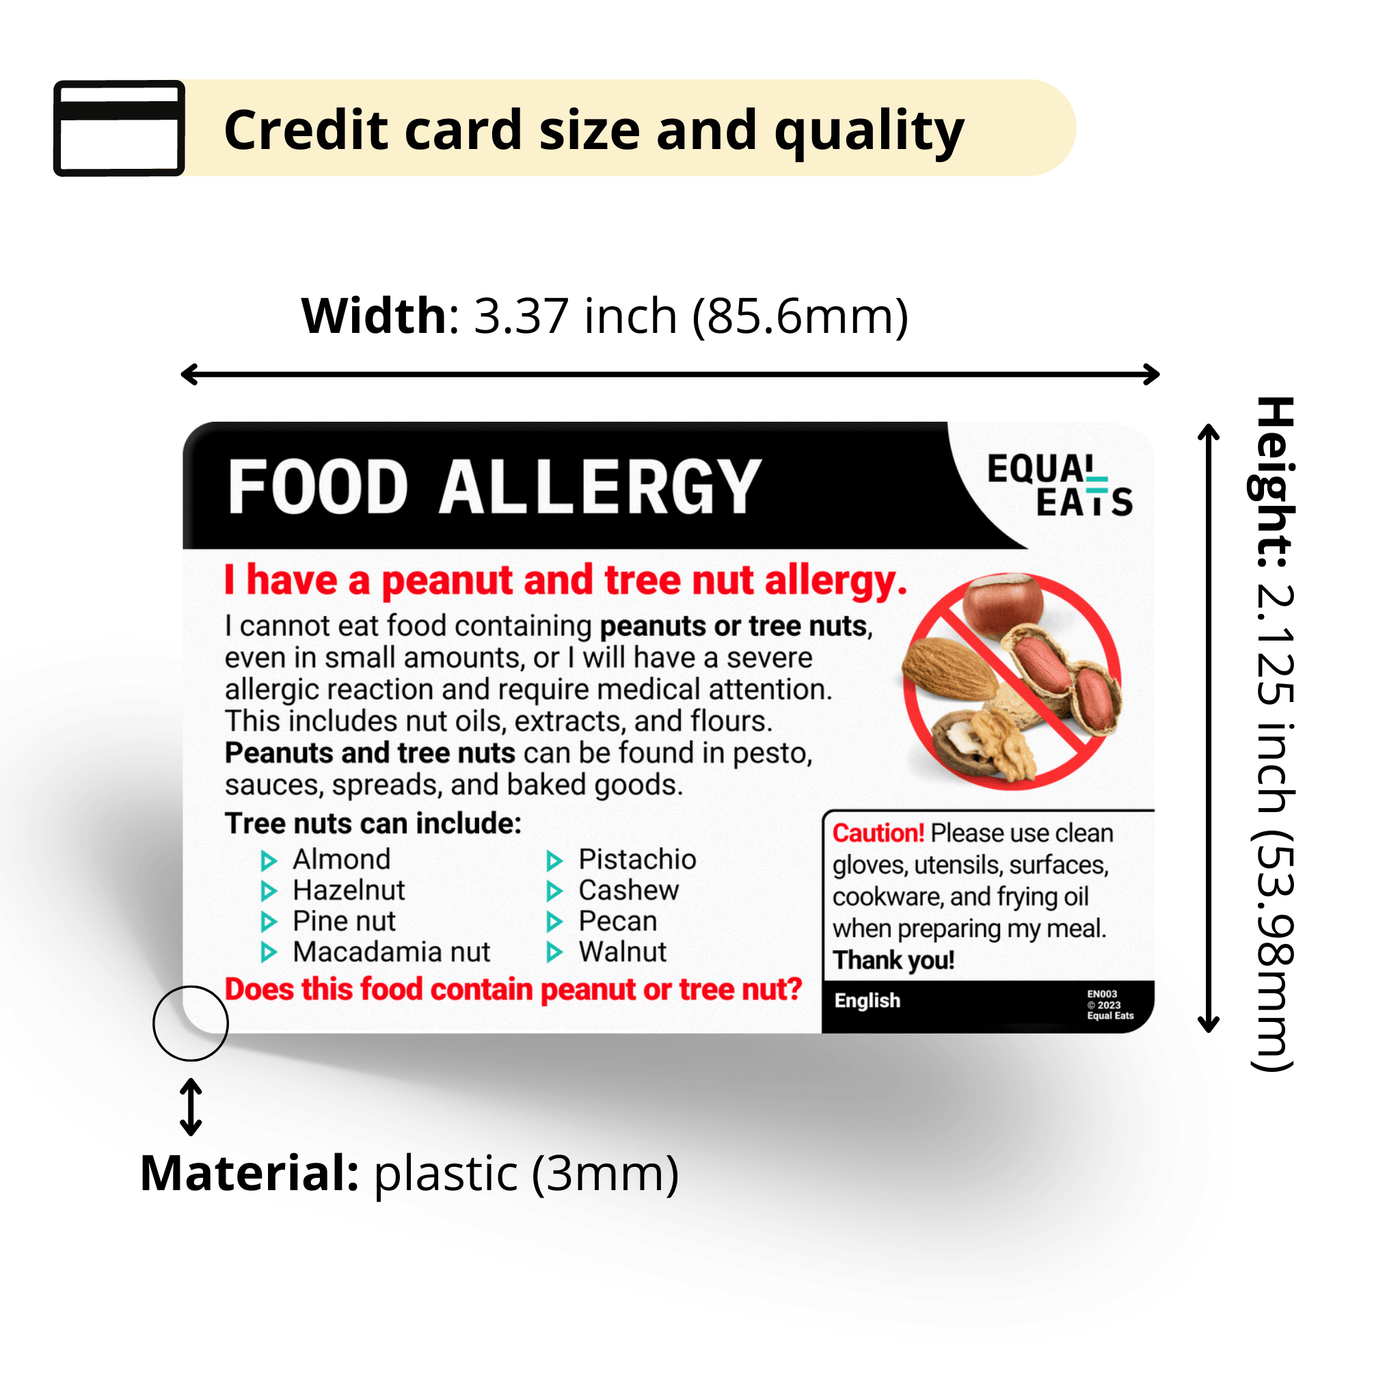 Croatian Peanut and Tree Nut Allergy Card